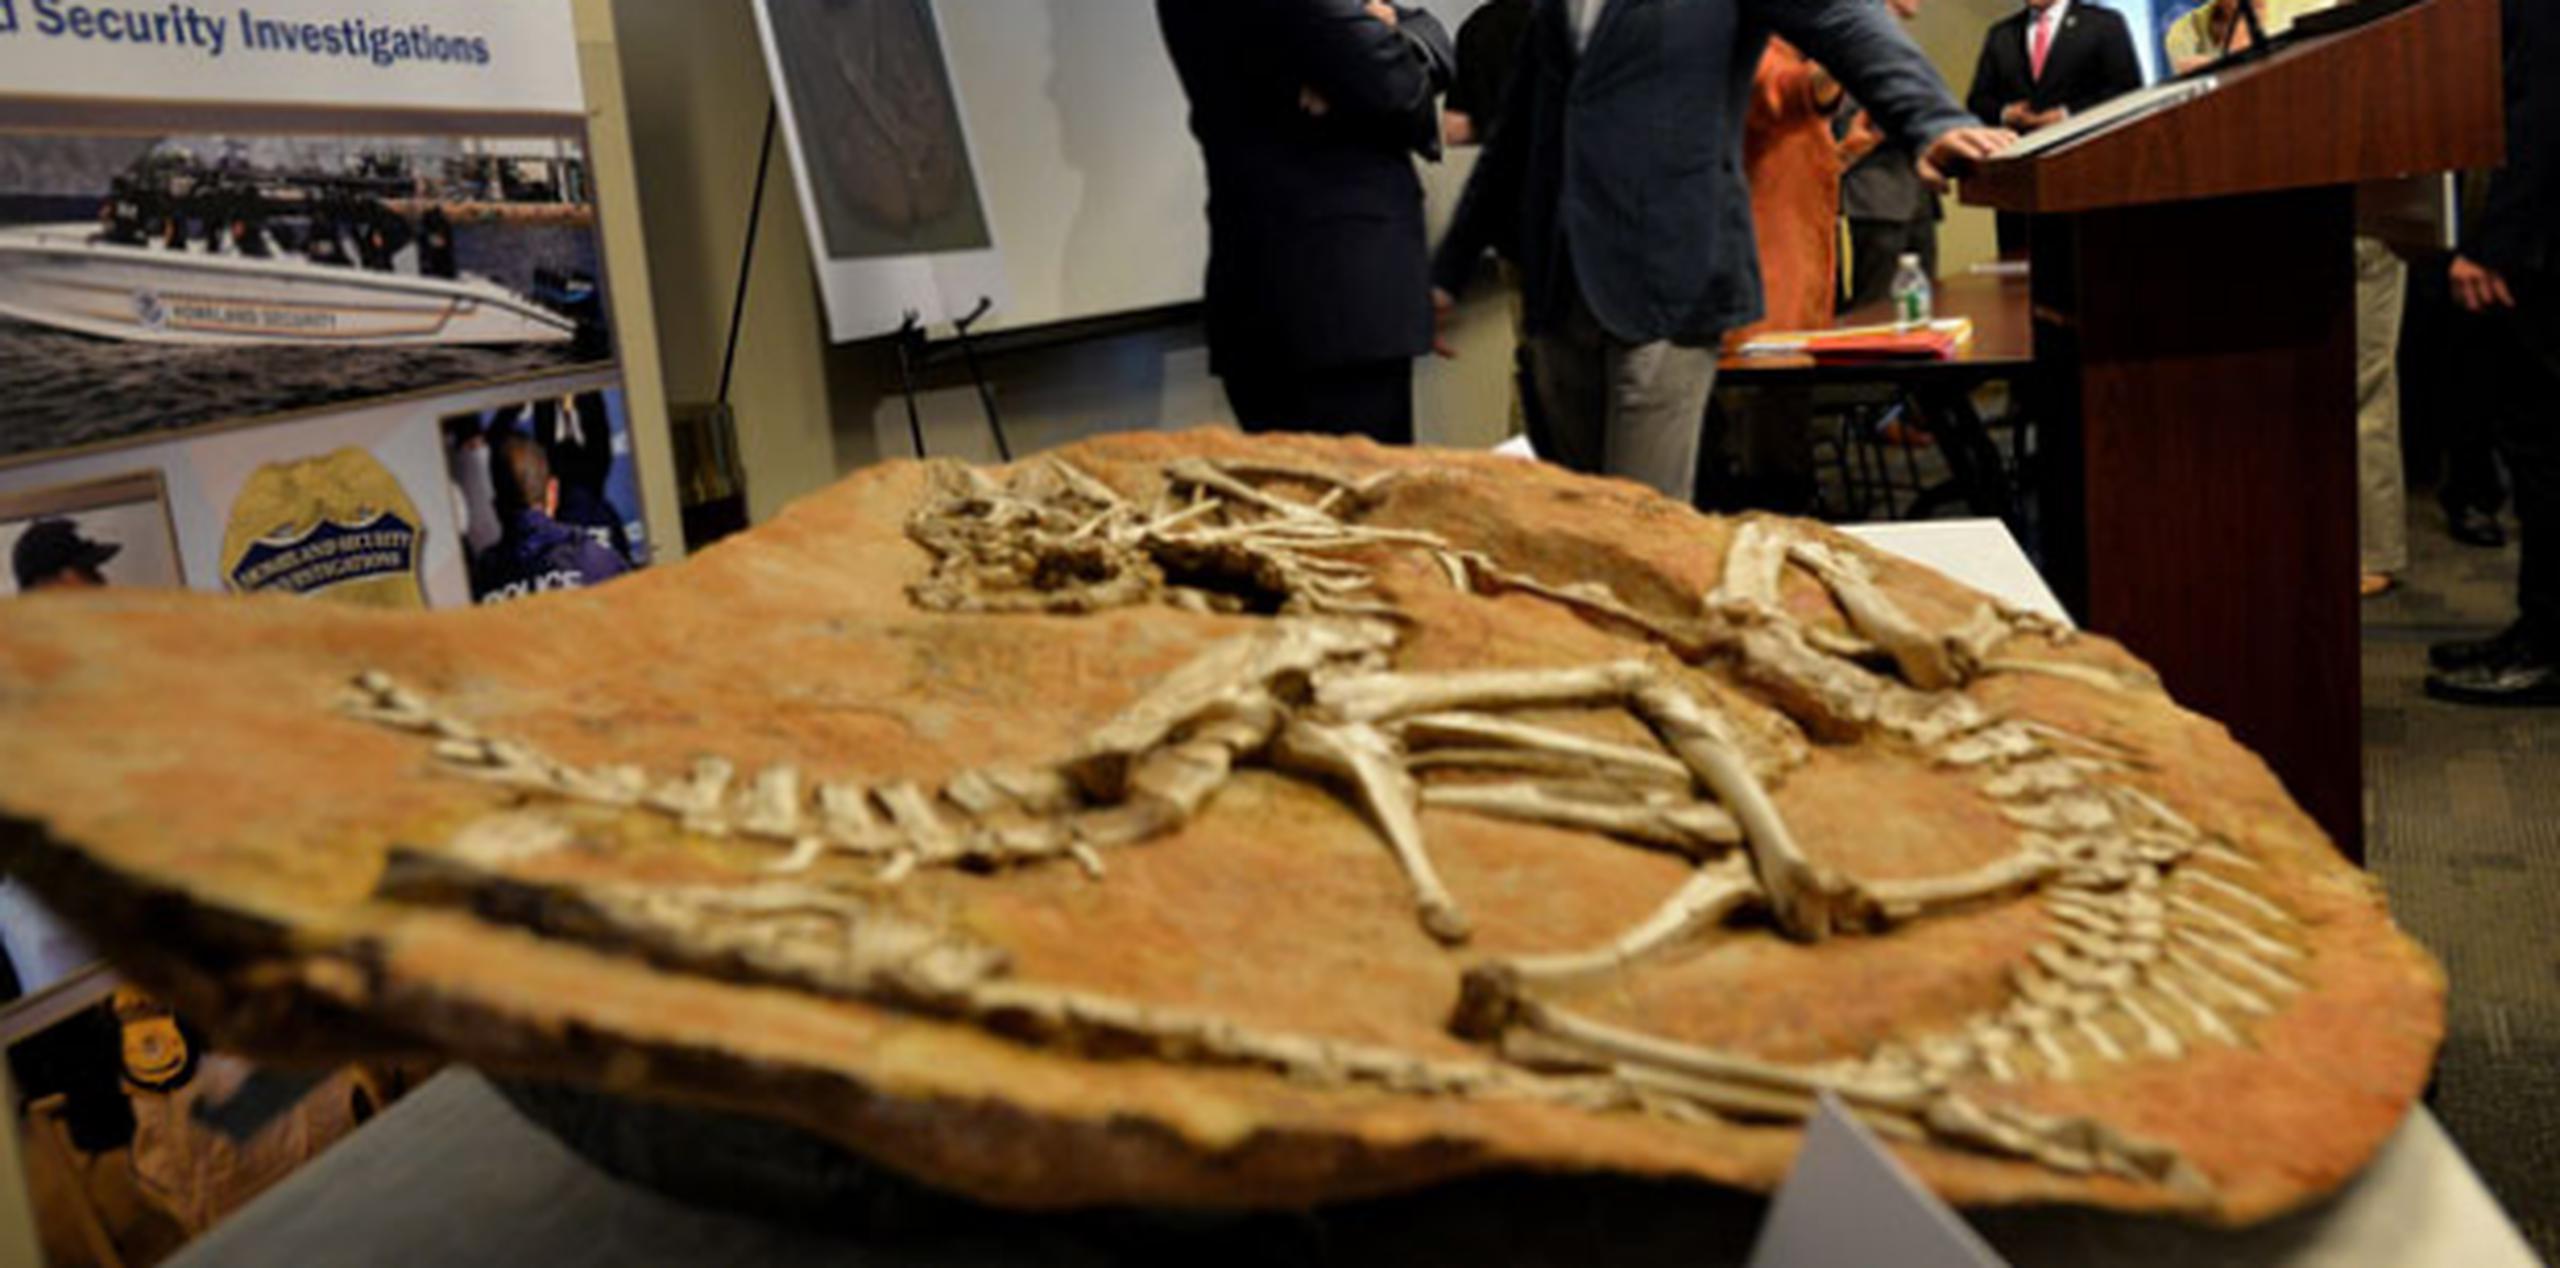 Las investigaciones llevaron a la detención de quien había importado ilegalmente estos restos paleontológicos, Eric Prokopi. (EFE)